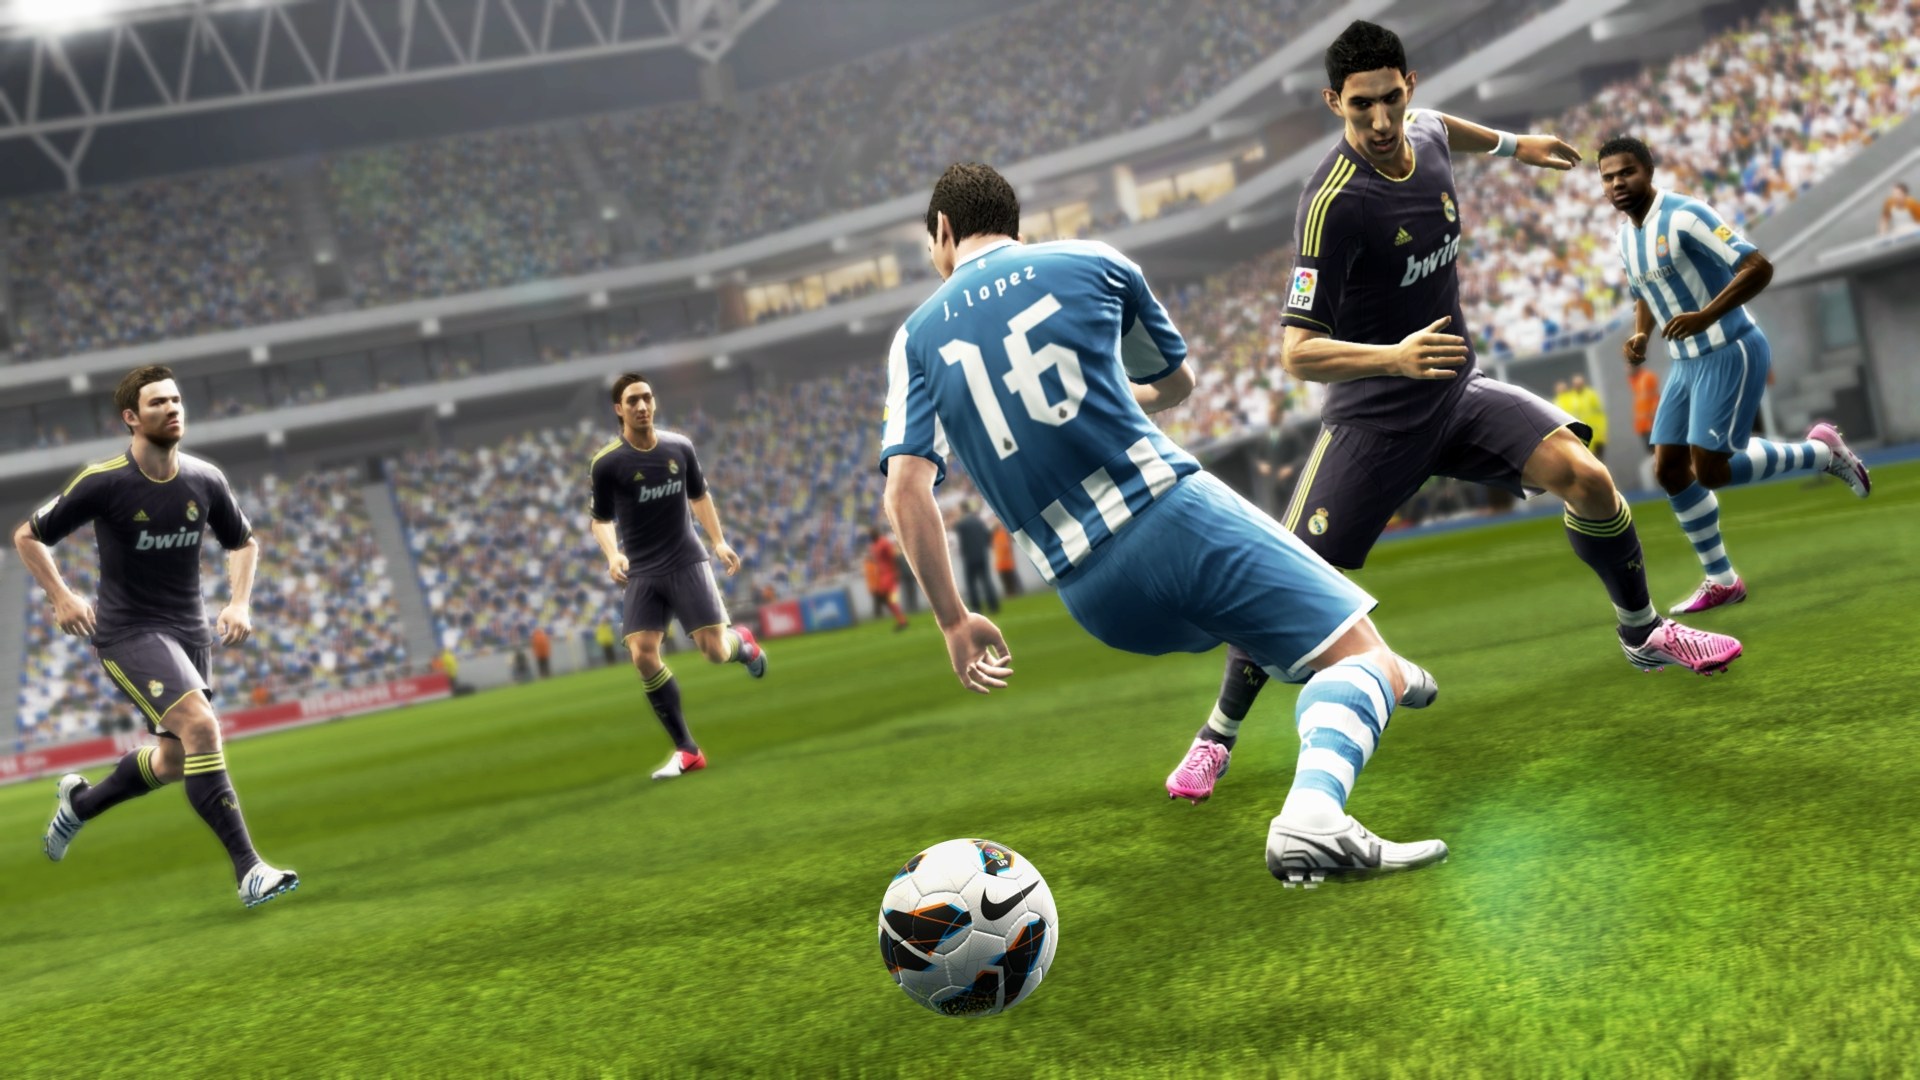 Player games играть. Pro Evolution Soccer 2013. Pro Evolution Soccer 2013 ps3. Pro Evolution Soccer 2013 Xbox 360. PLAYSTATION 3 игры PES 2013.